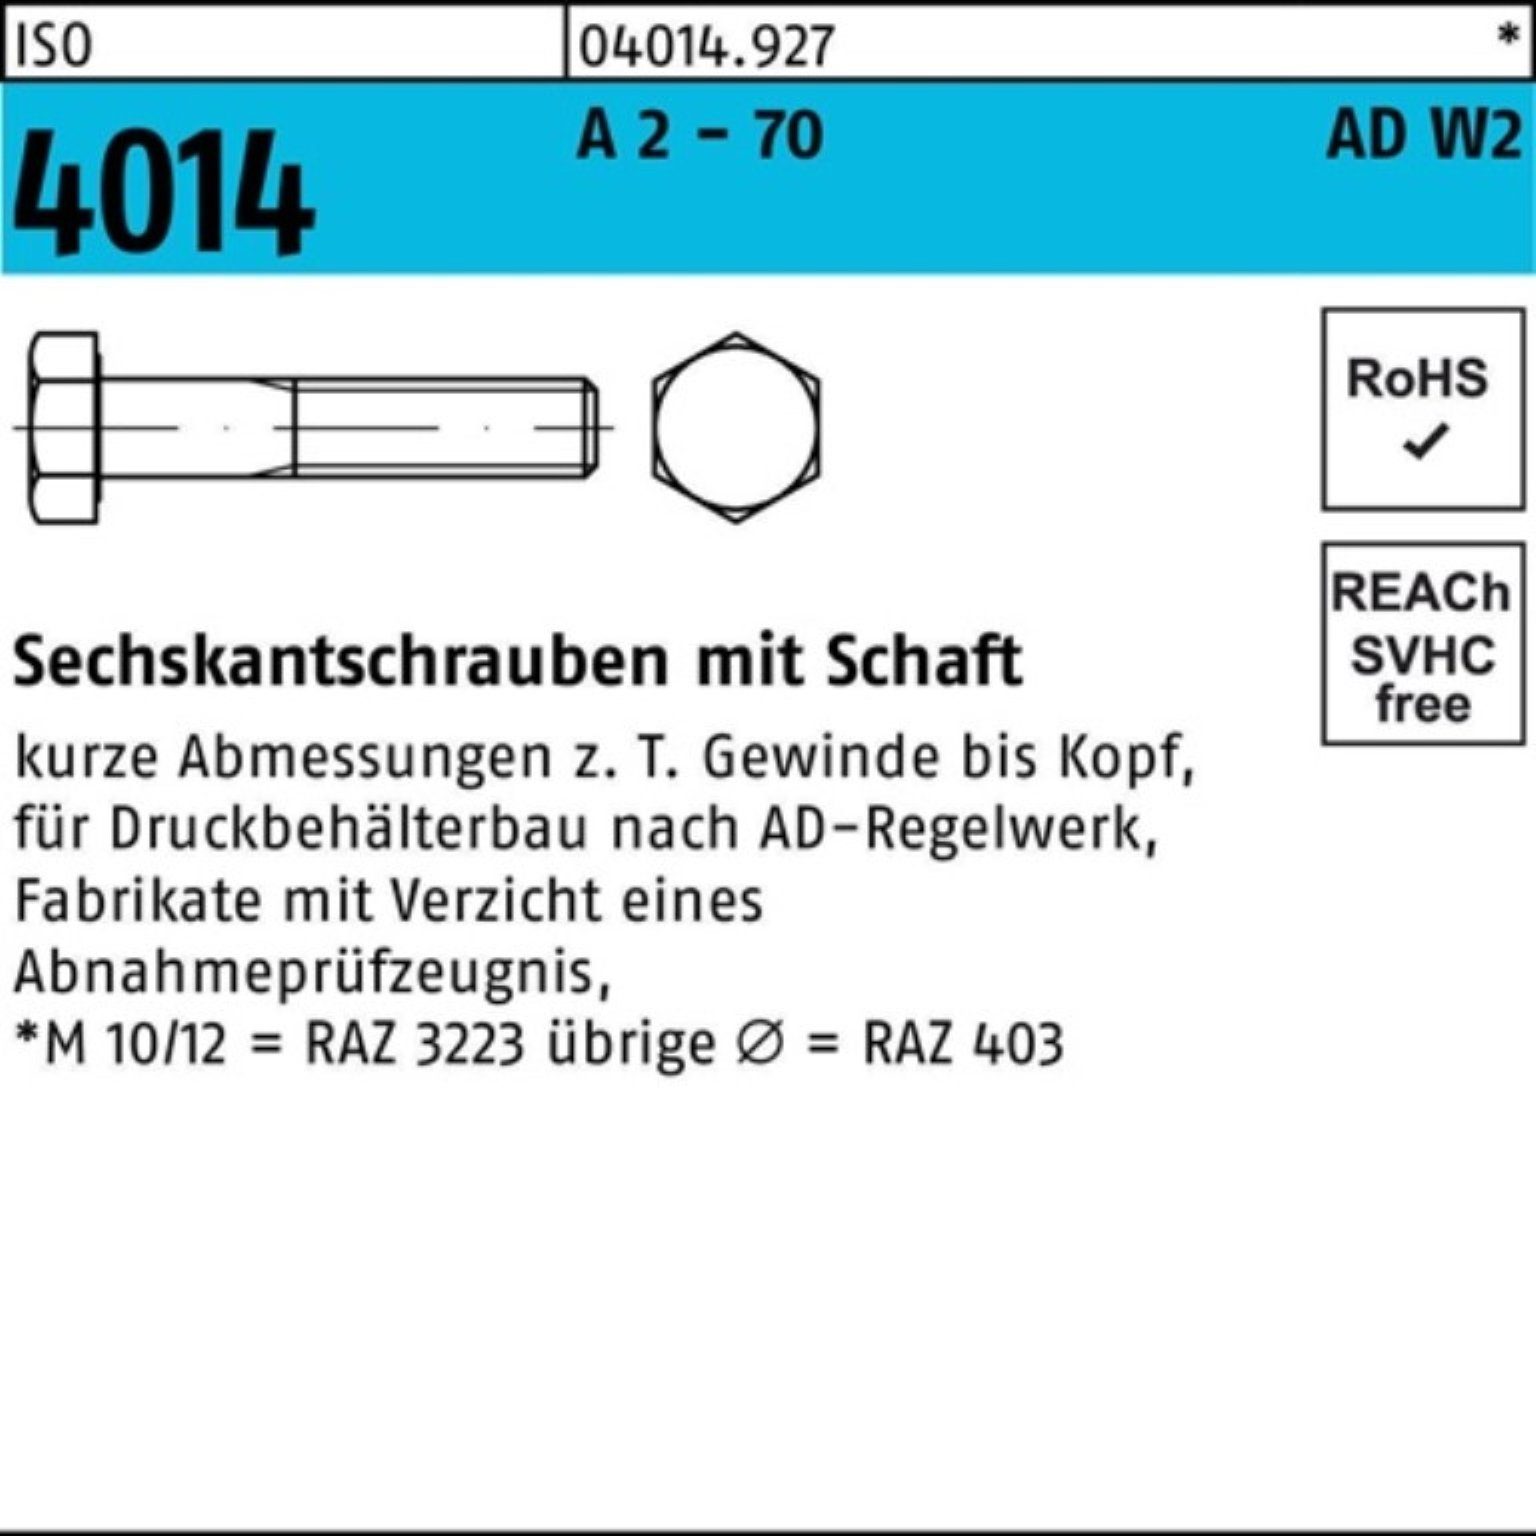 Sechskantschraube - Pack ISO Sechskantschraube 2 Schaft 70 110 A AD-W2 2 Bufab 4014 100er M12x